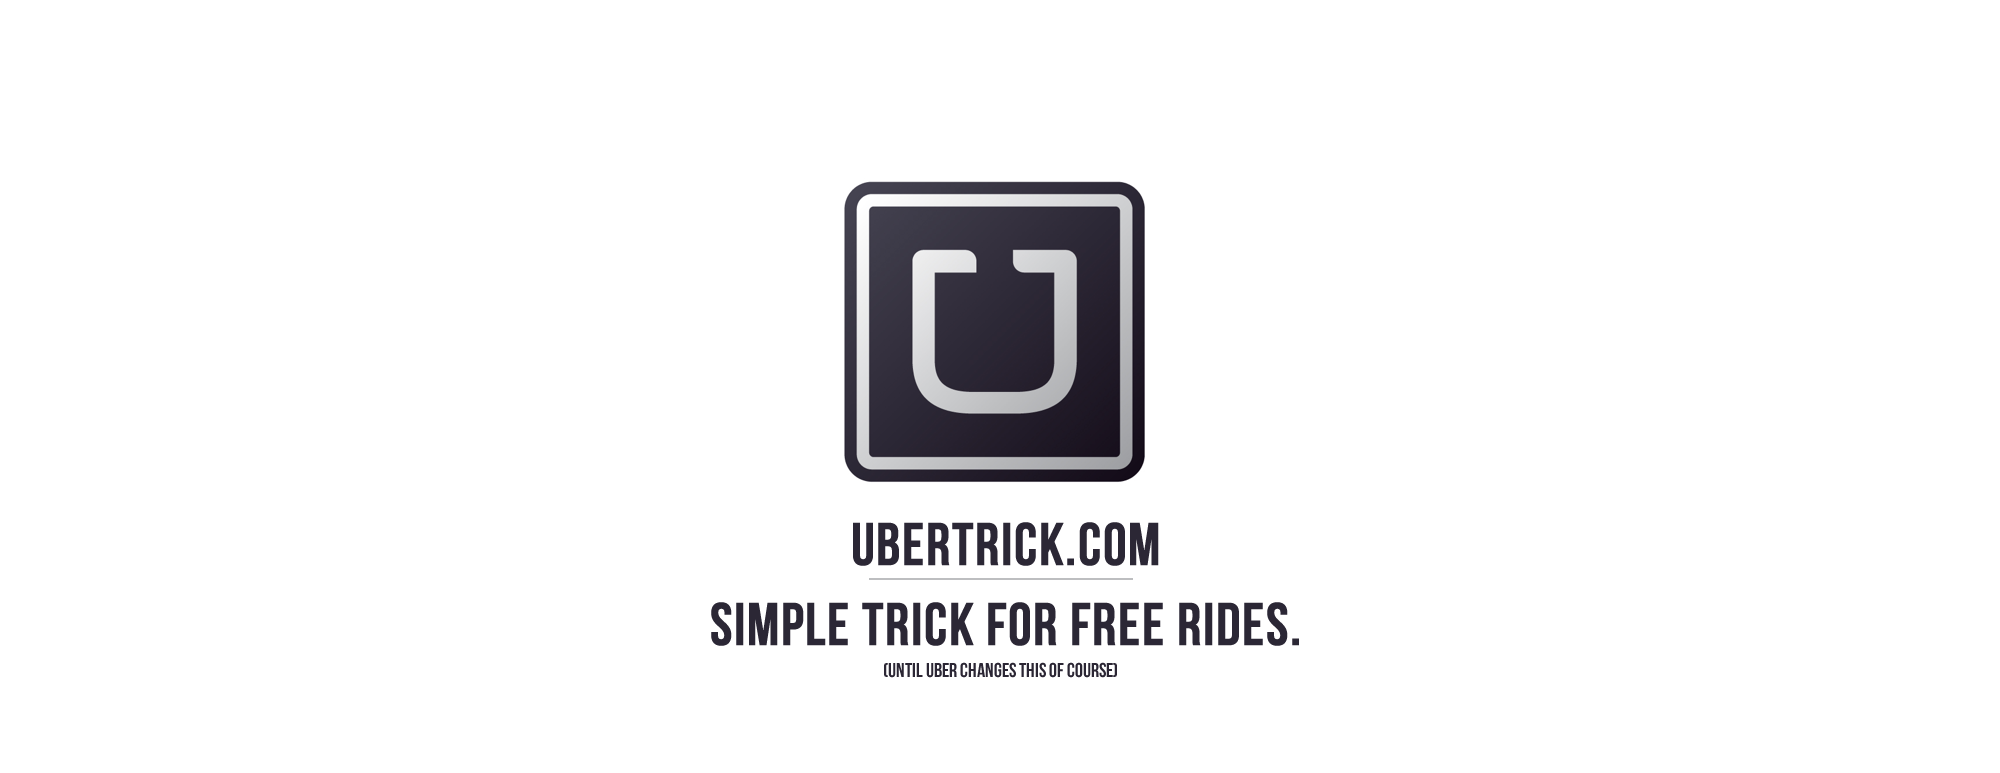 Free Uber